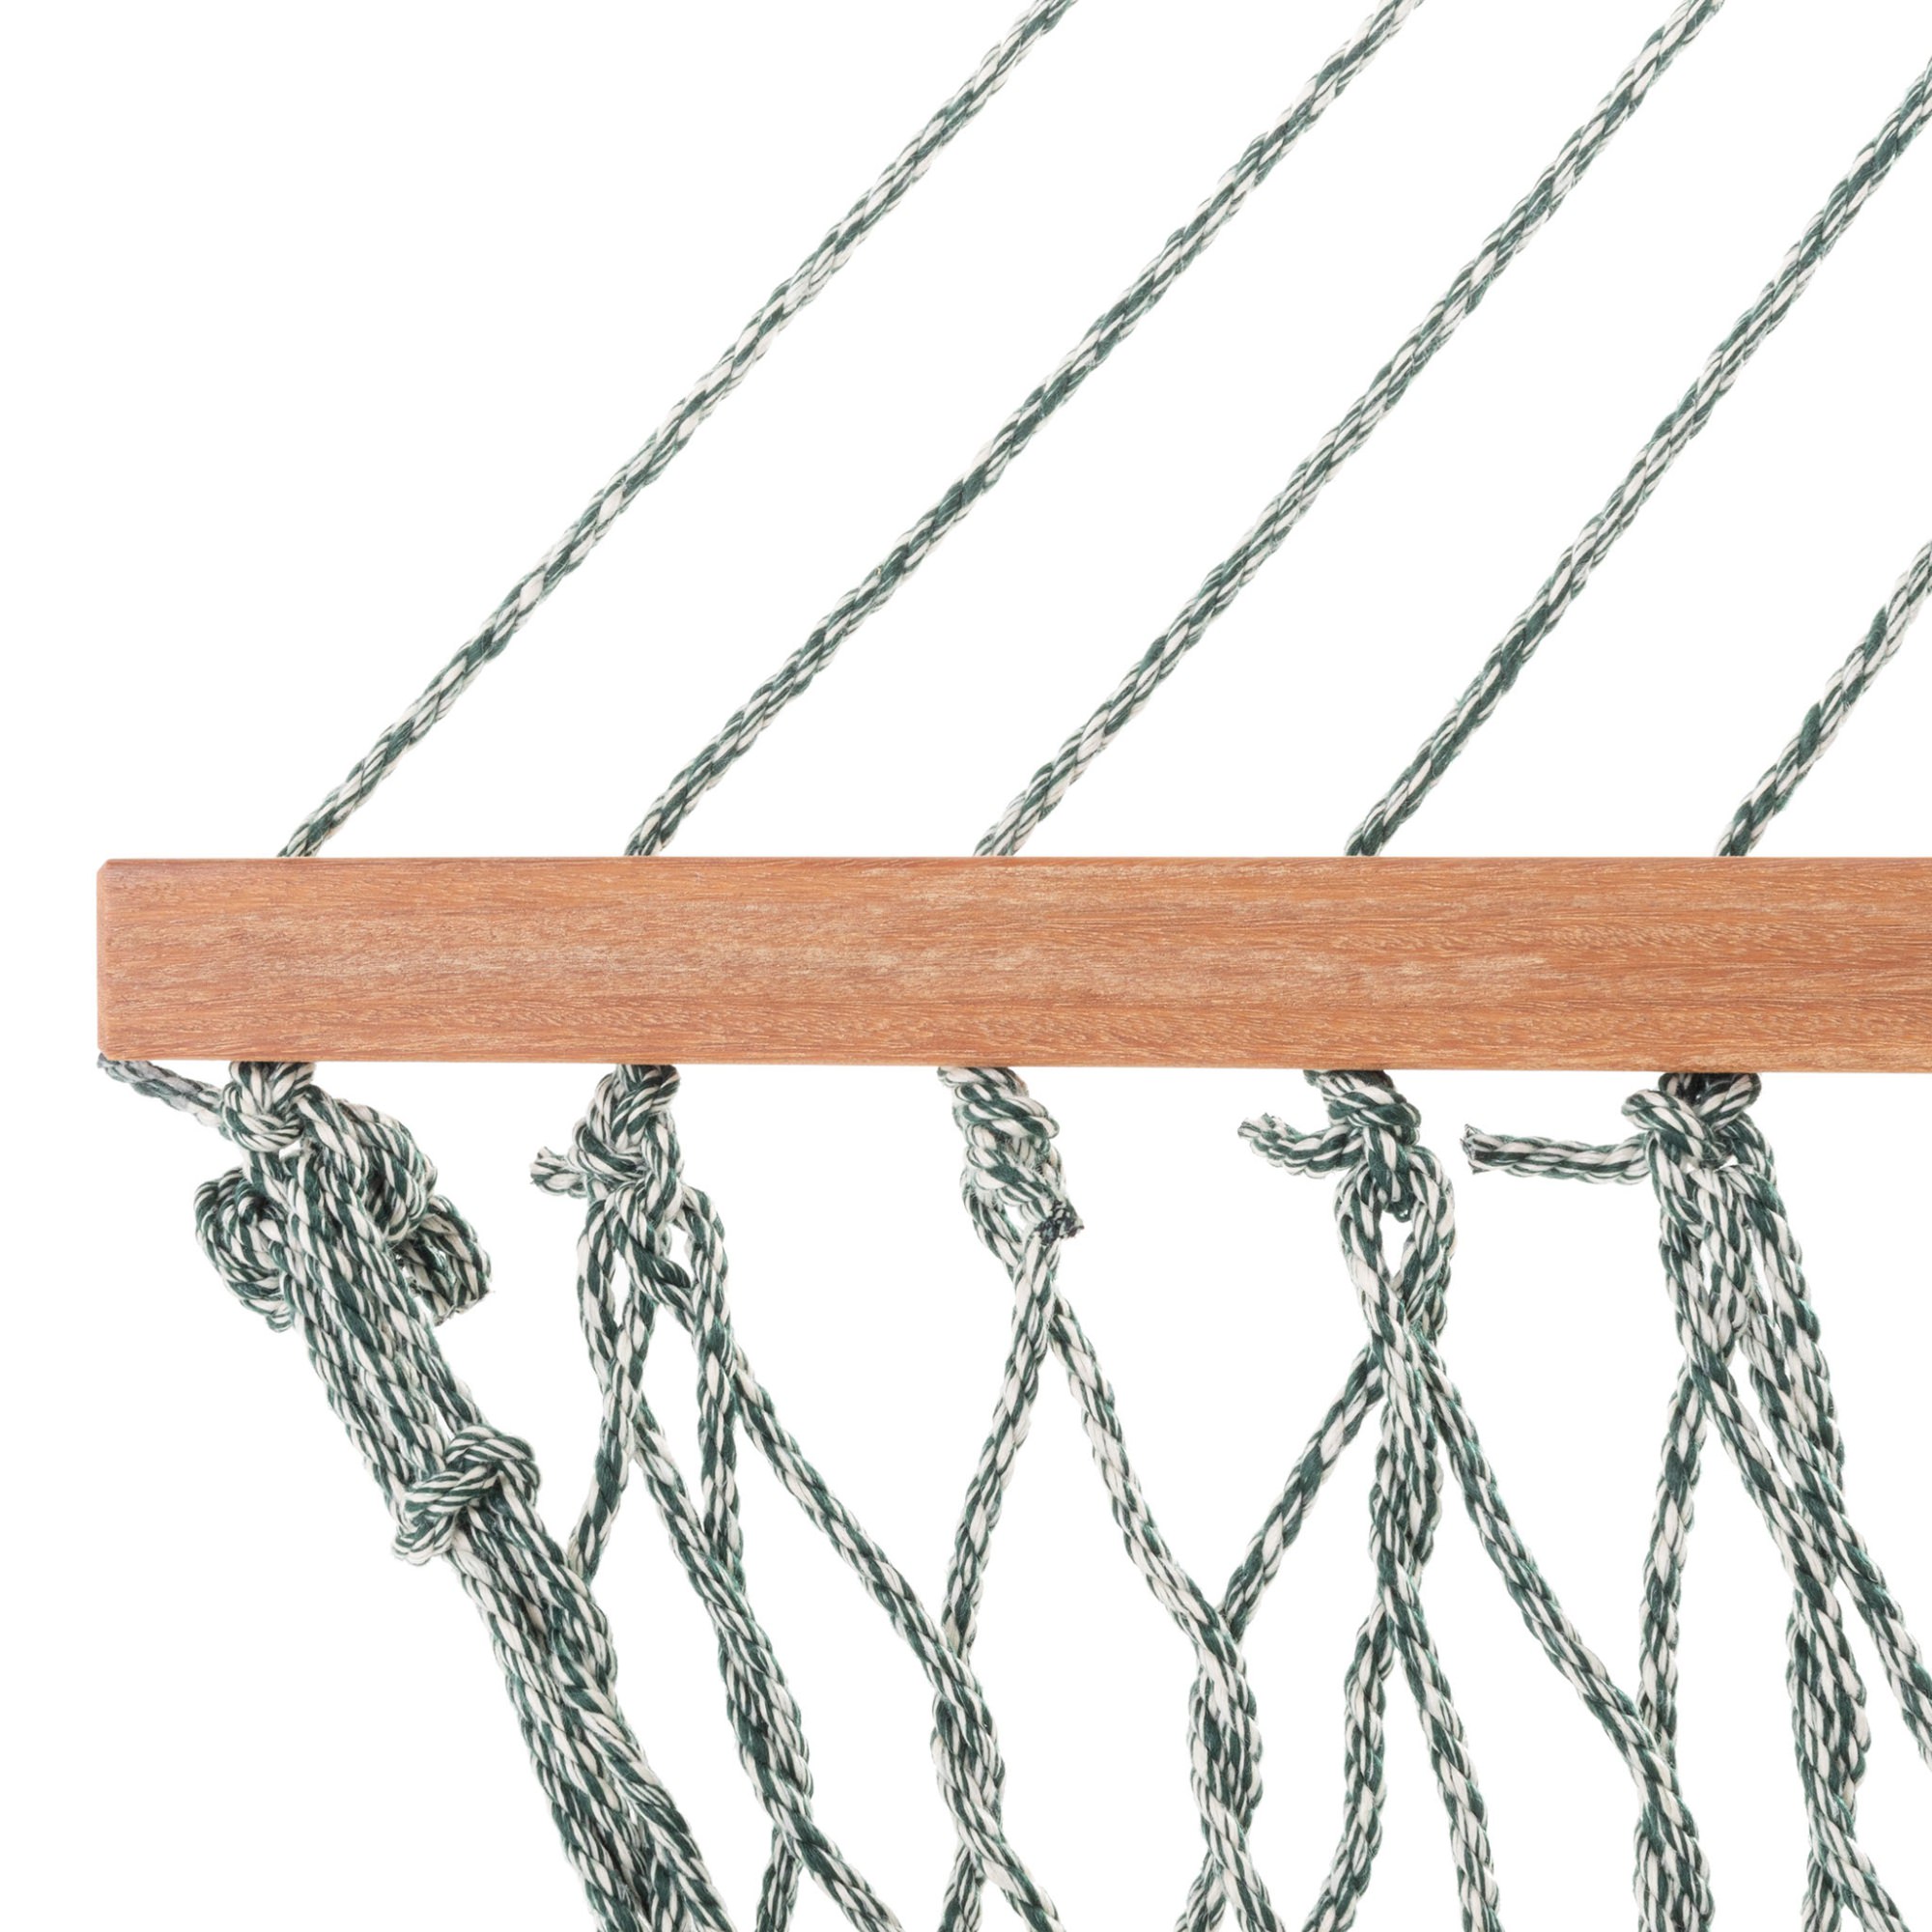 DuraCord Small Rope Hammock - Navy Oatmeal Heirloom Tweed